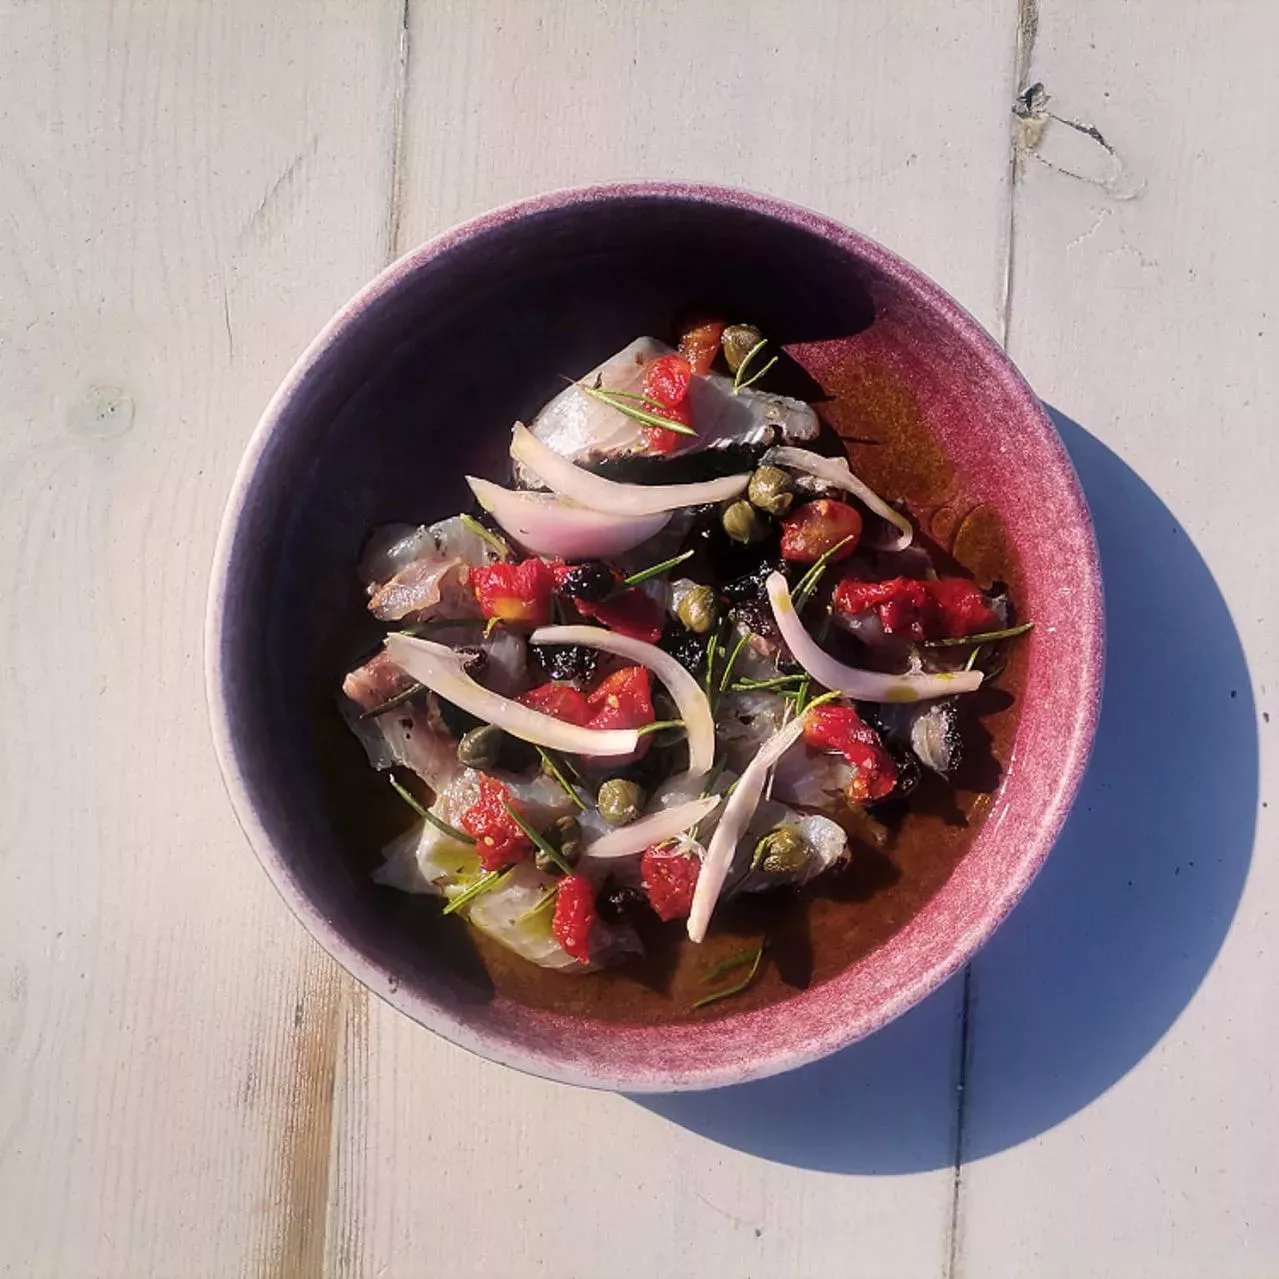 Σίφνος: Οι καλύτερες γευστικές εμπειρίες στο νησί του Τσελεμεντέ